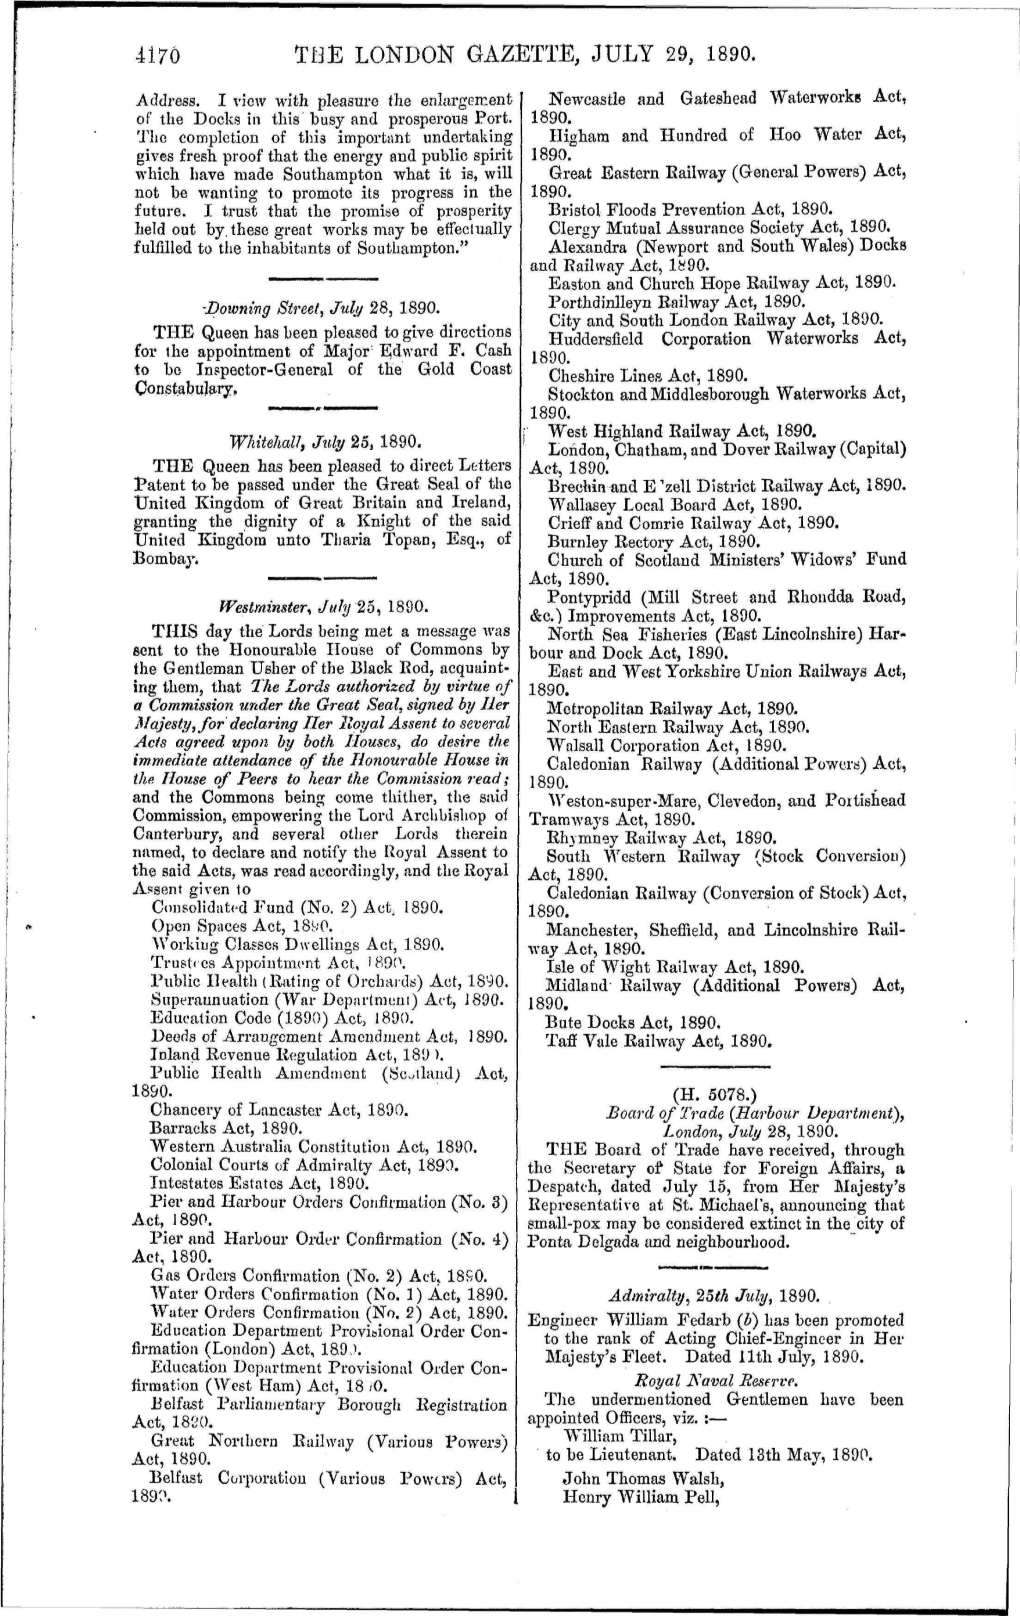 4176 the London Gazette, July 29, 1890